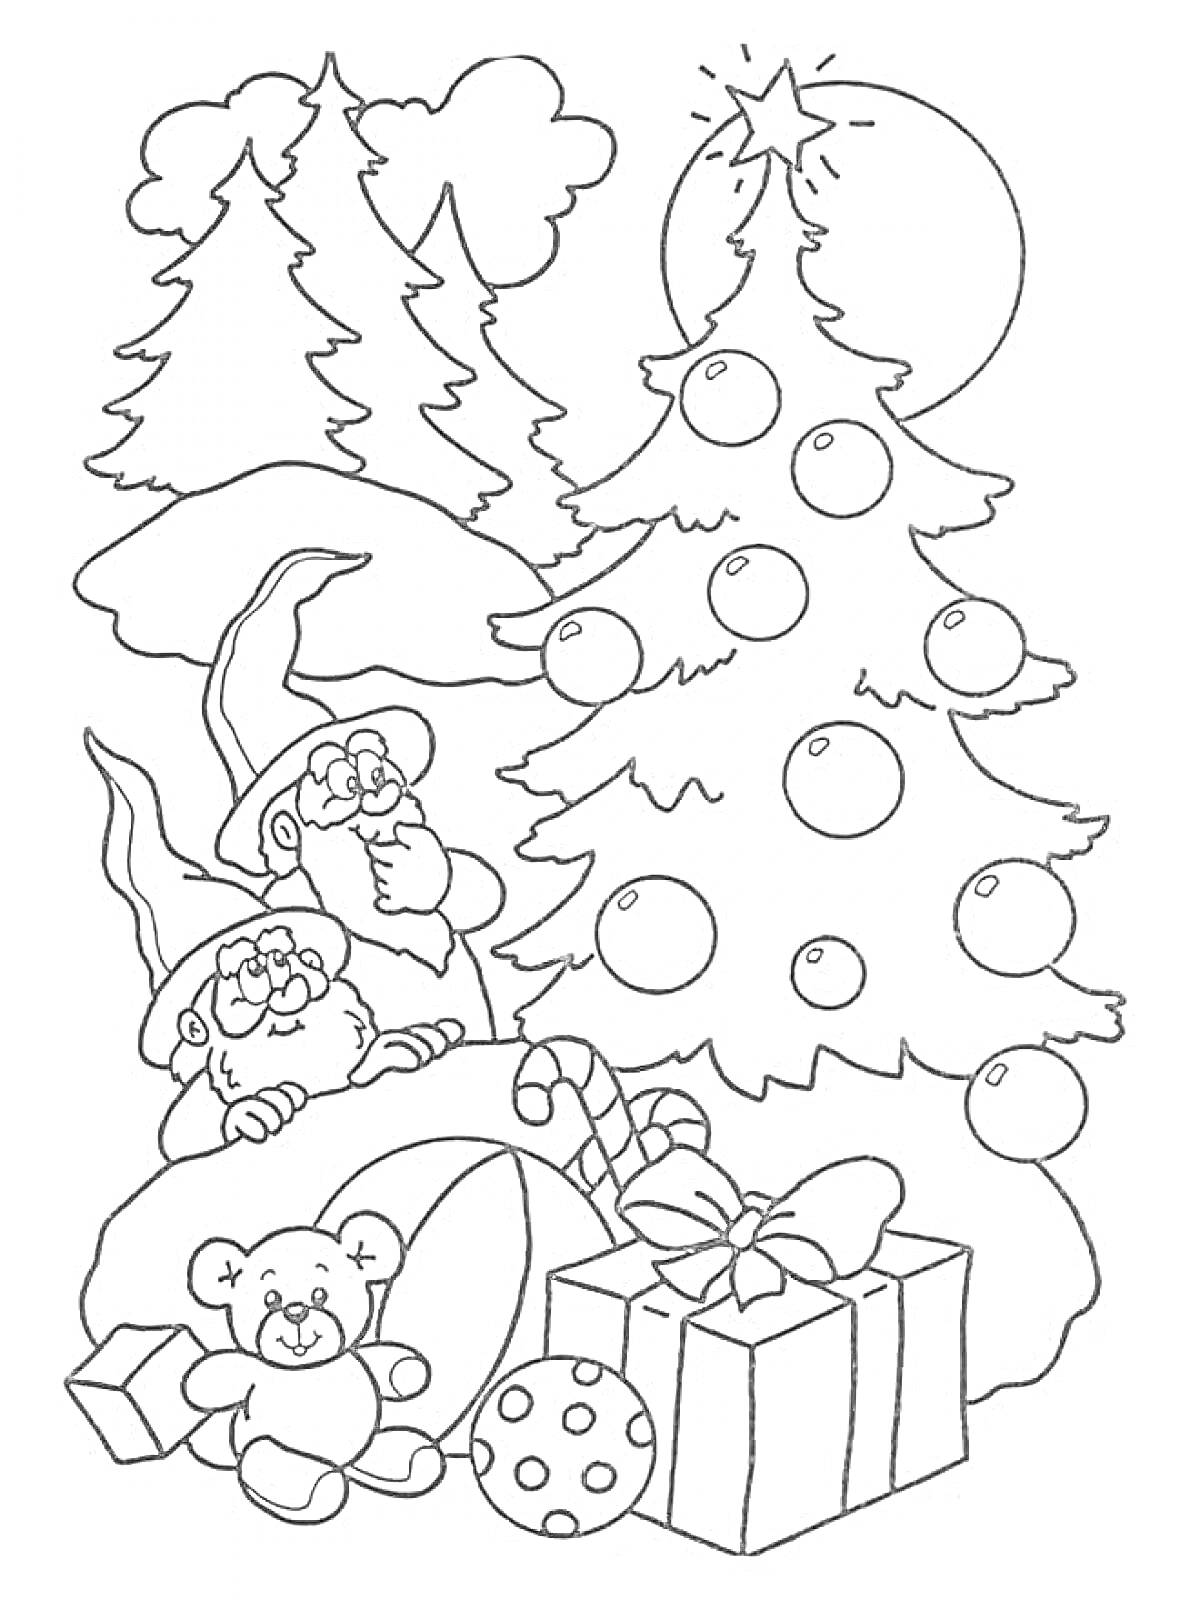 Раскраска Два новогодних эльфа рядом с ёлкой, игрушечным мишкой, подарками, ёлочными шарами, конфетой и ёлками на заднем плане под луной